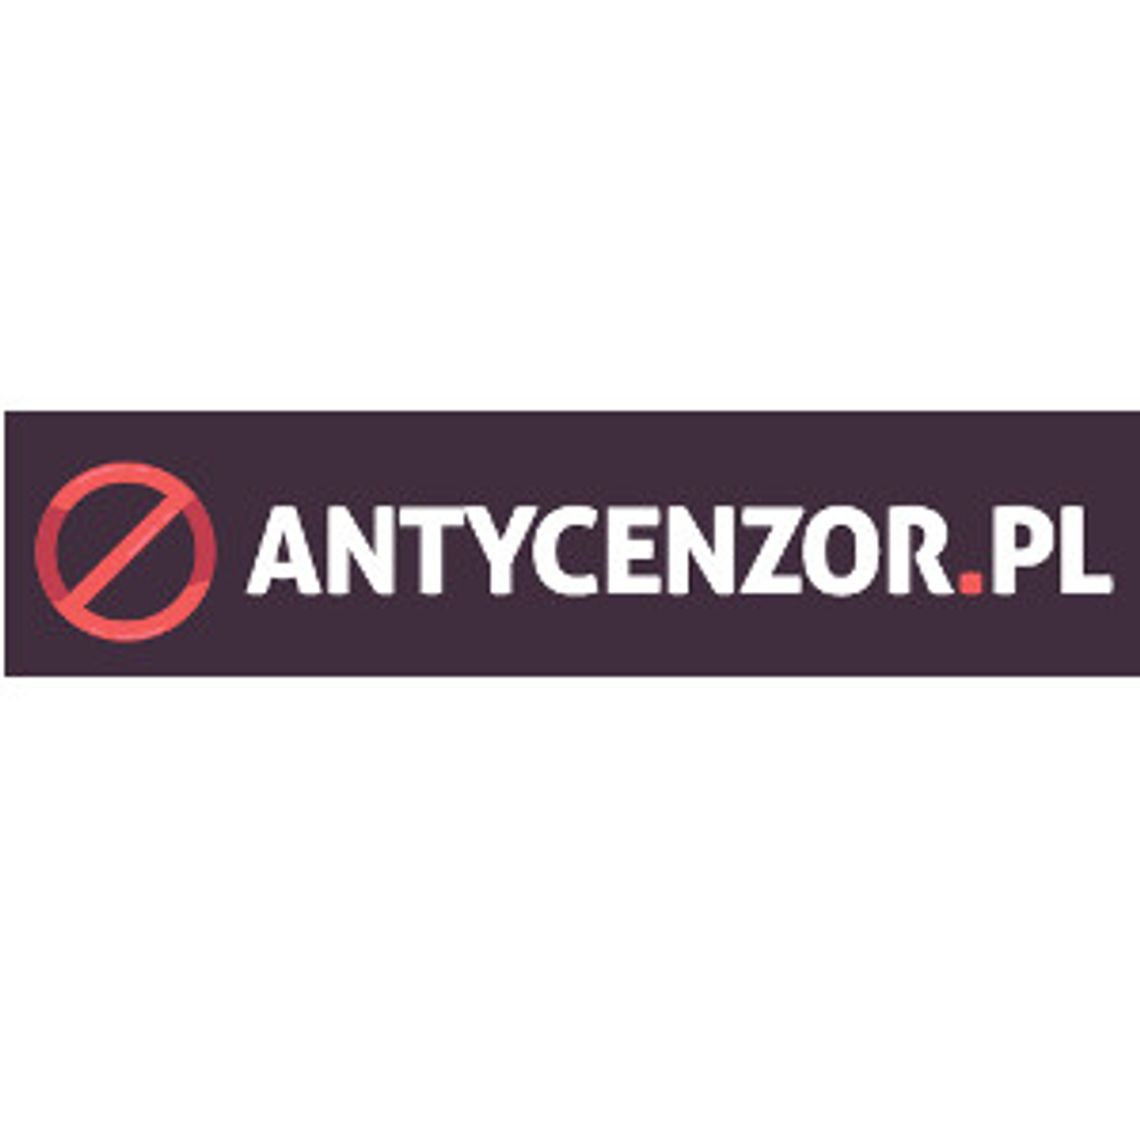 Antycenzor